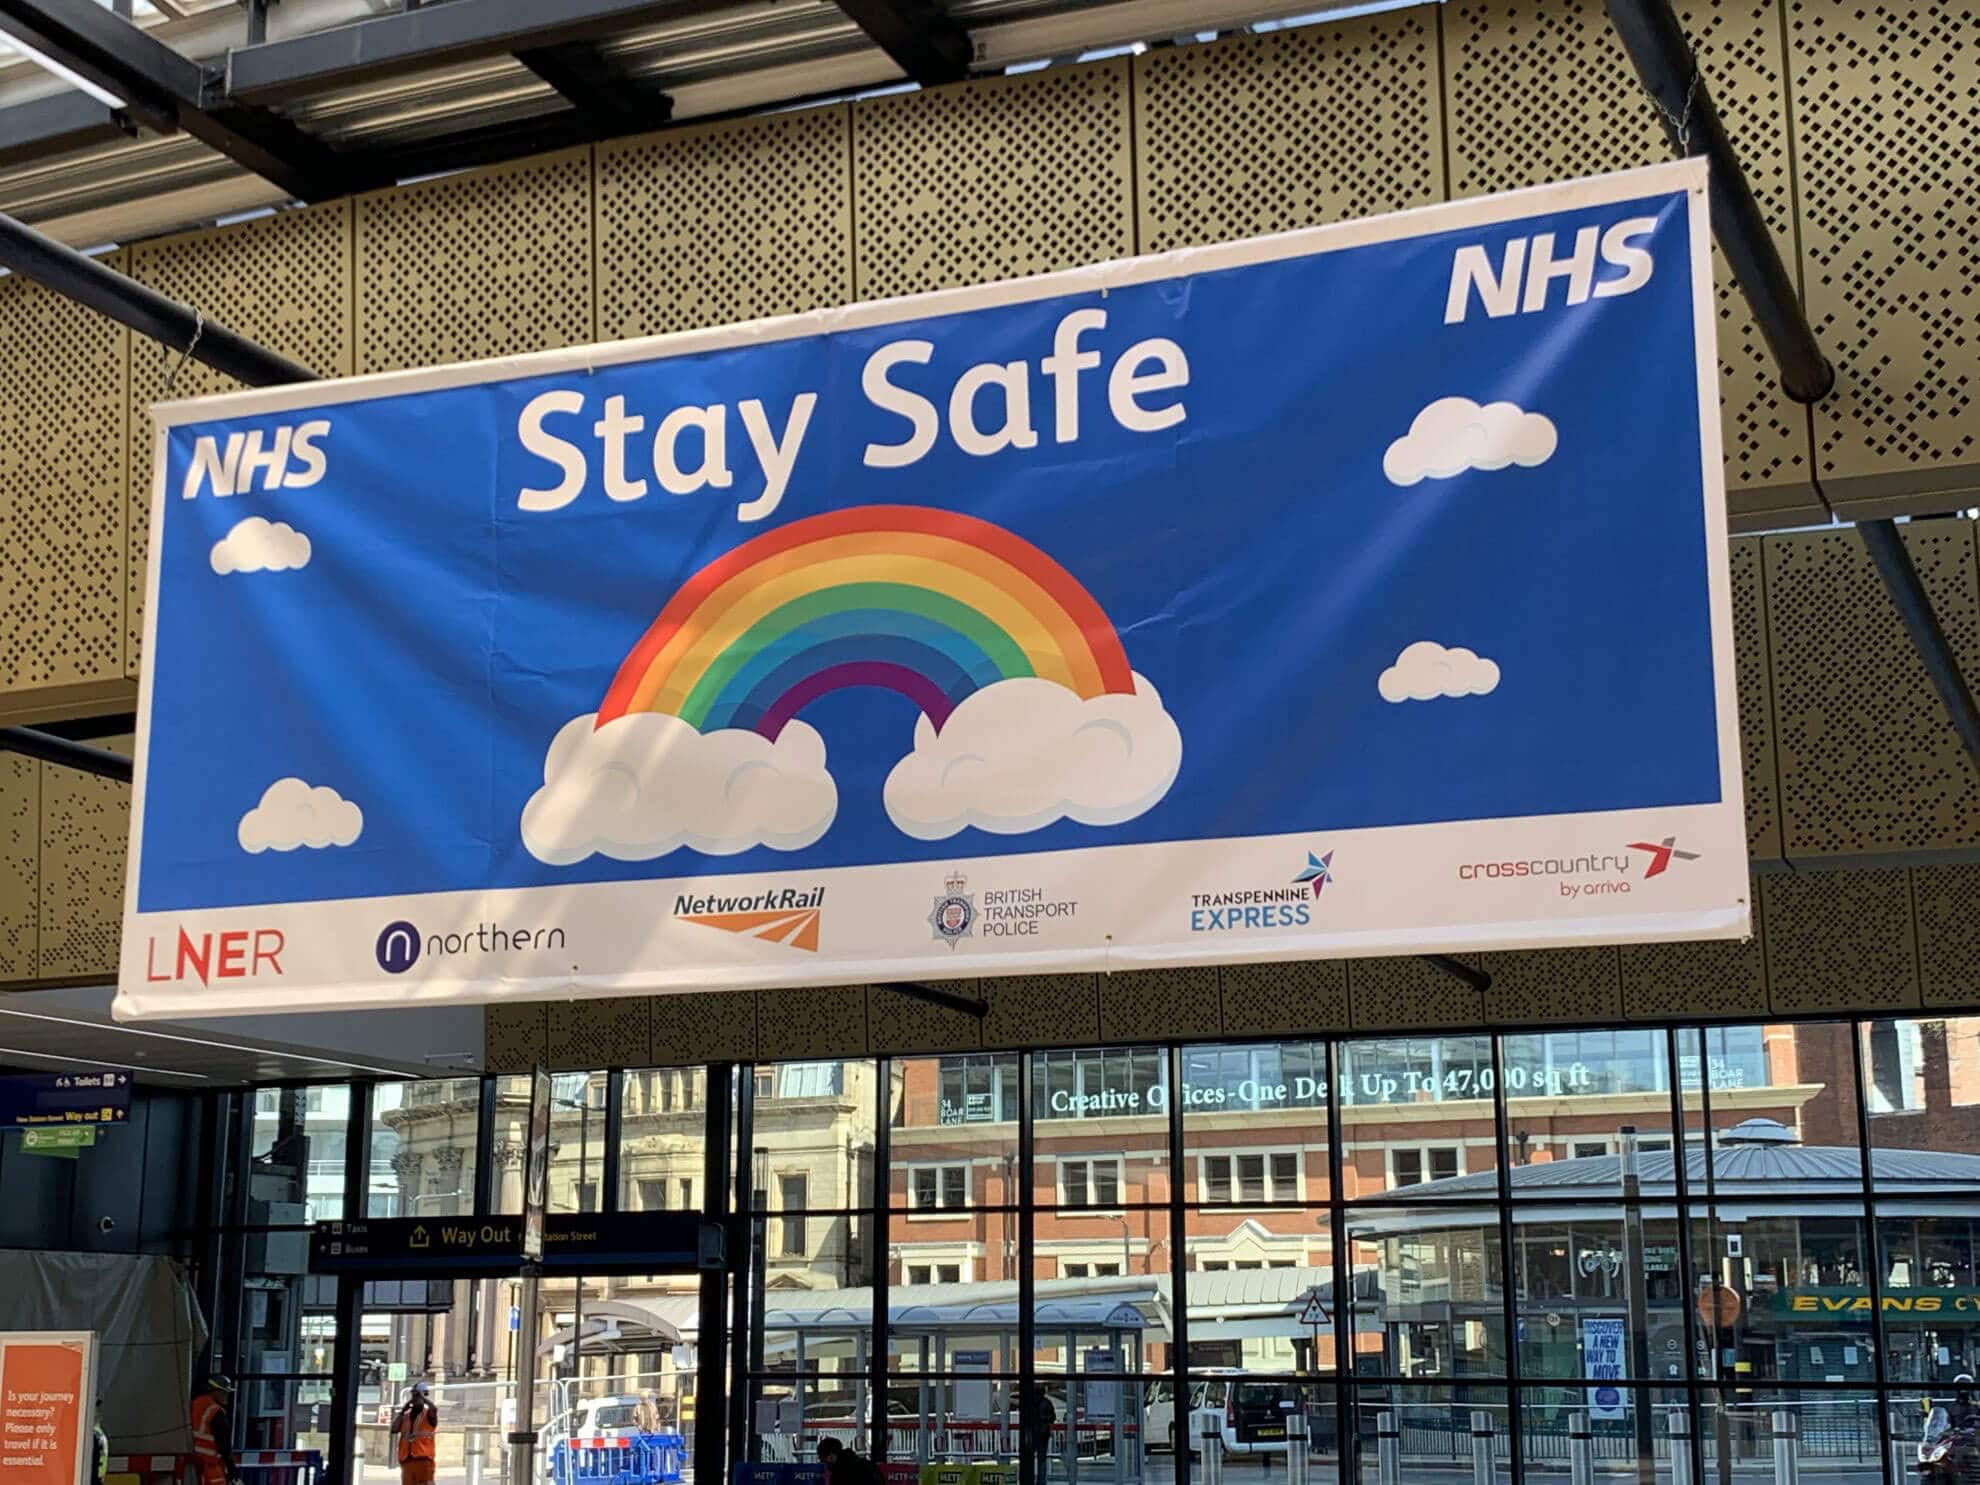 NHS Stay Safe banner